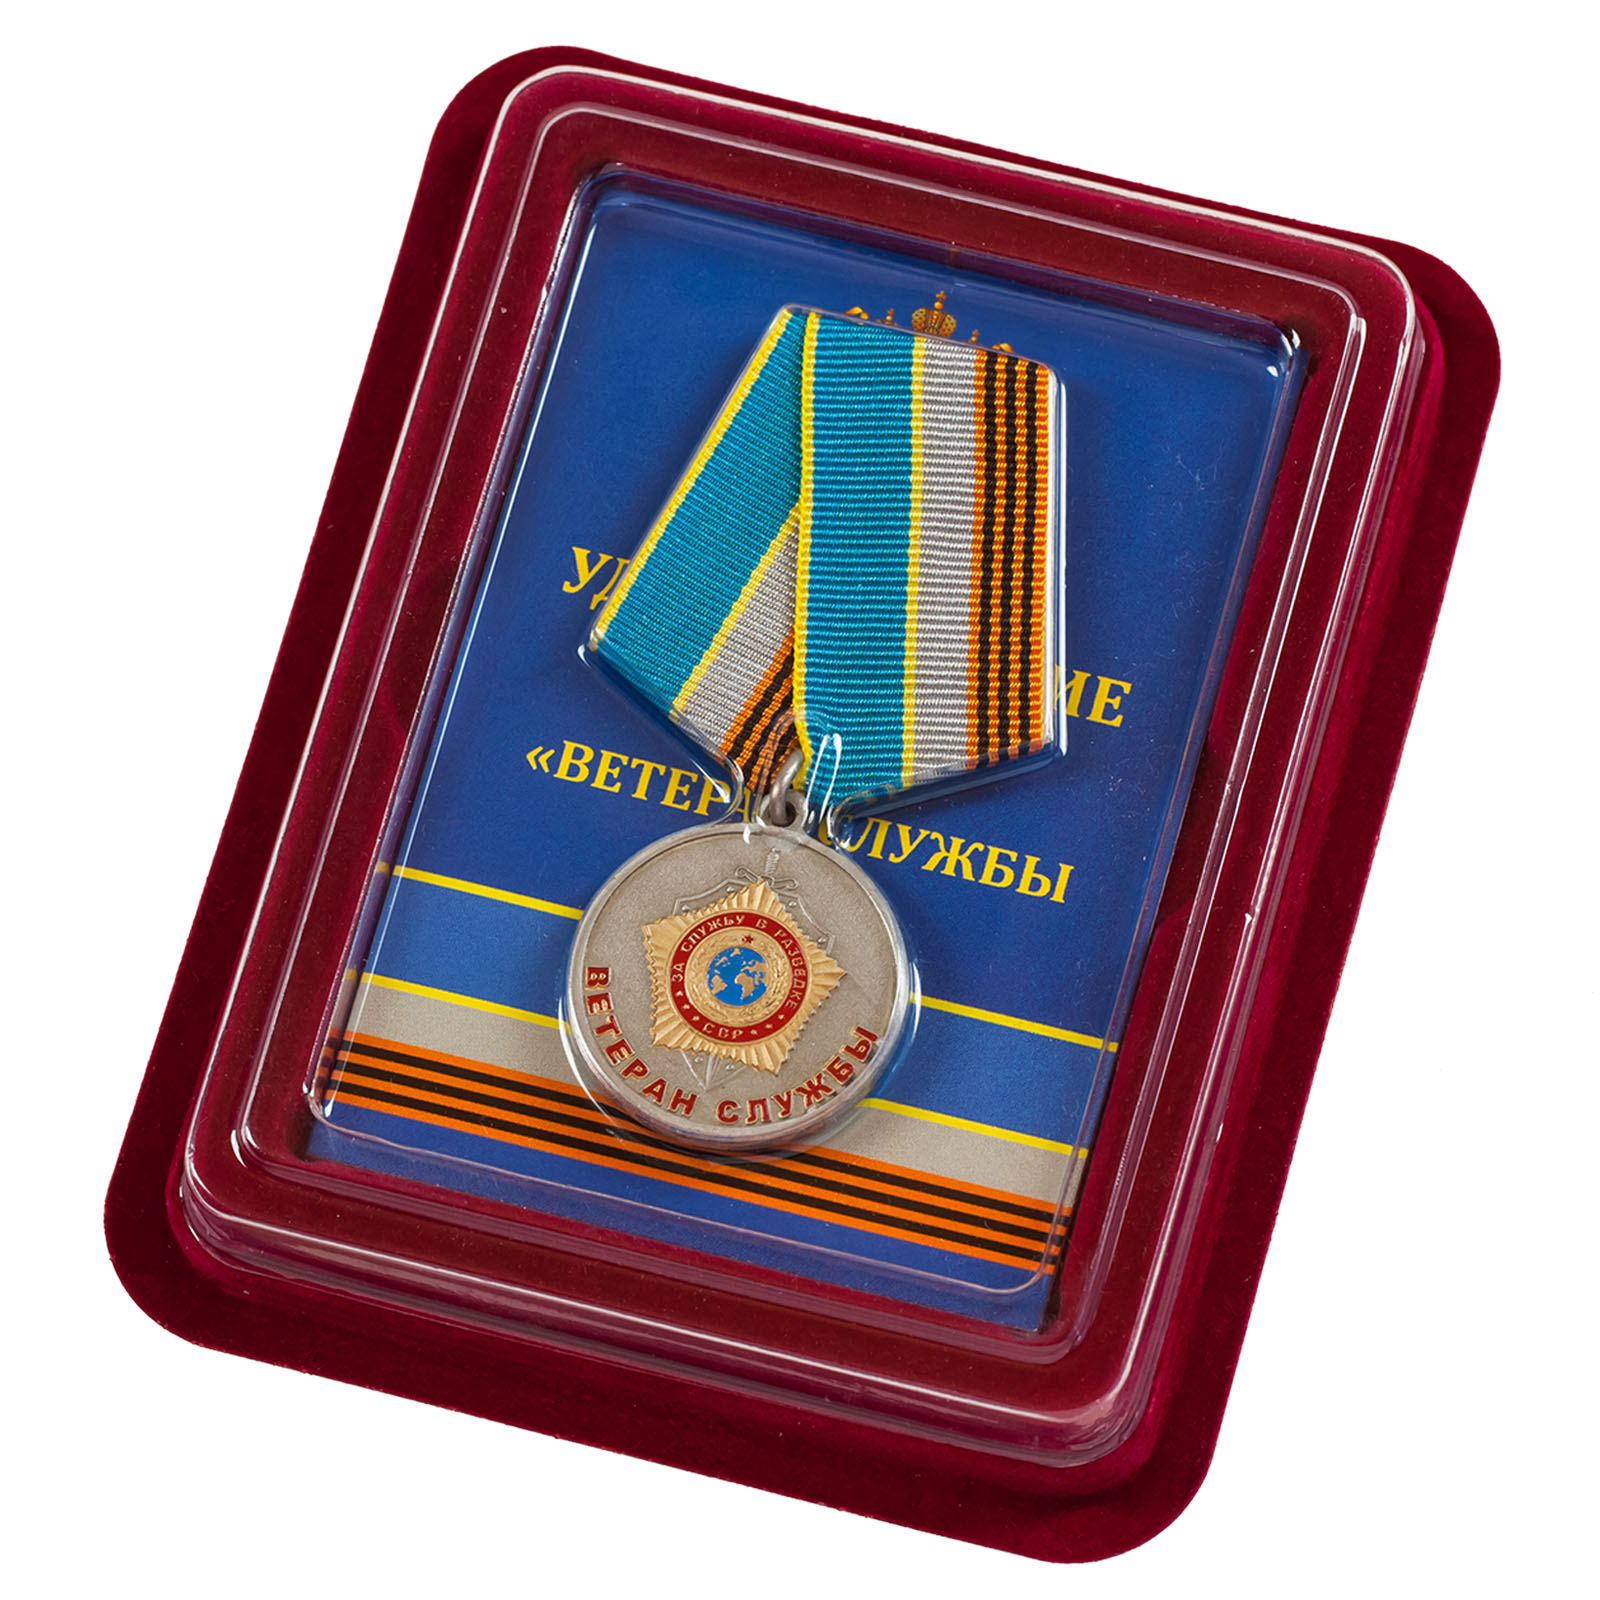 Купить медаль СВР "Ветеран службы" в наградном футляре по лучшей цене